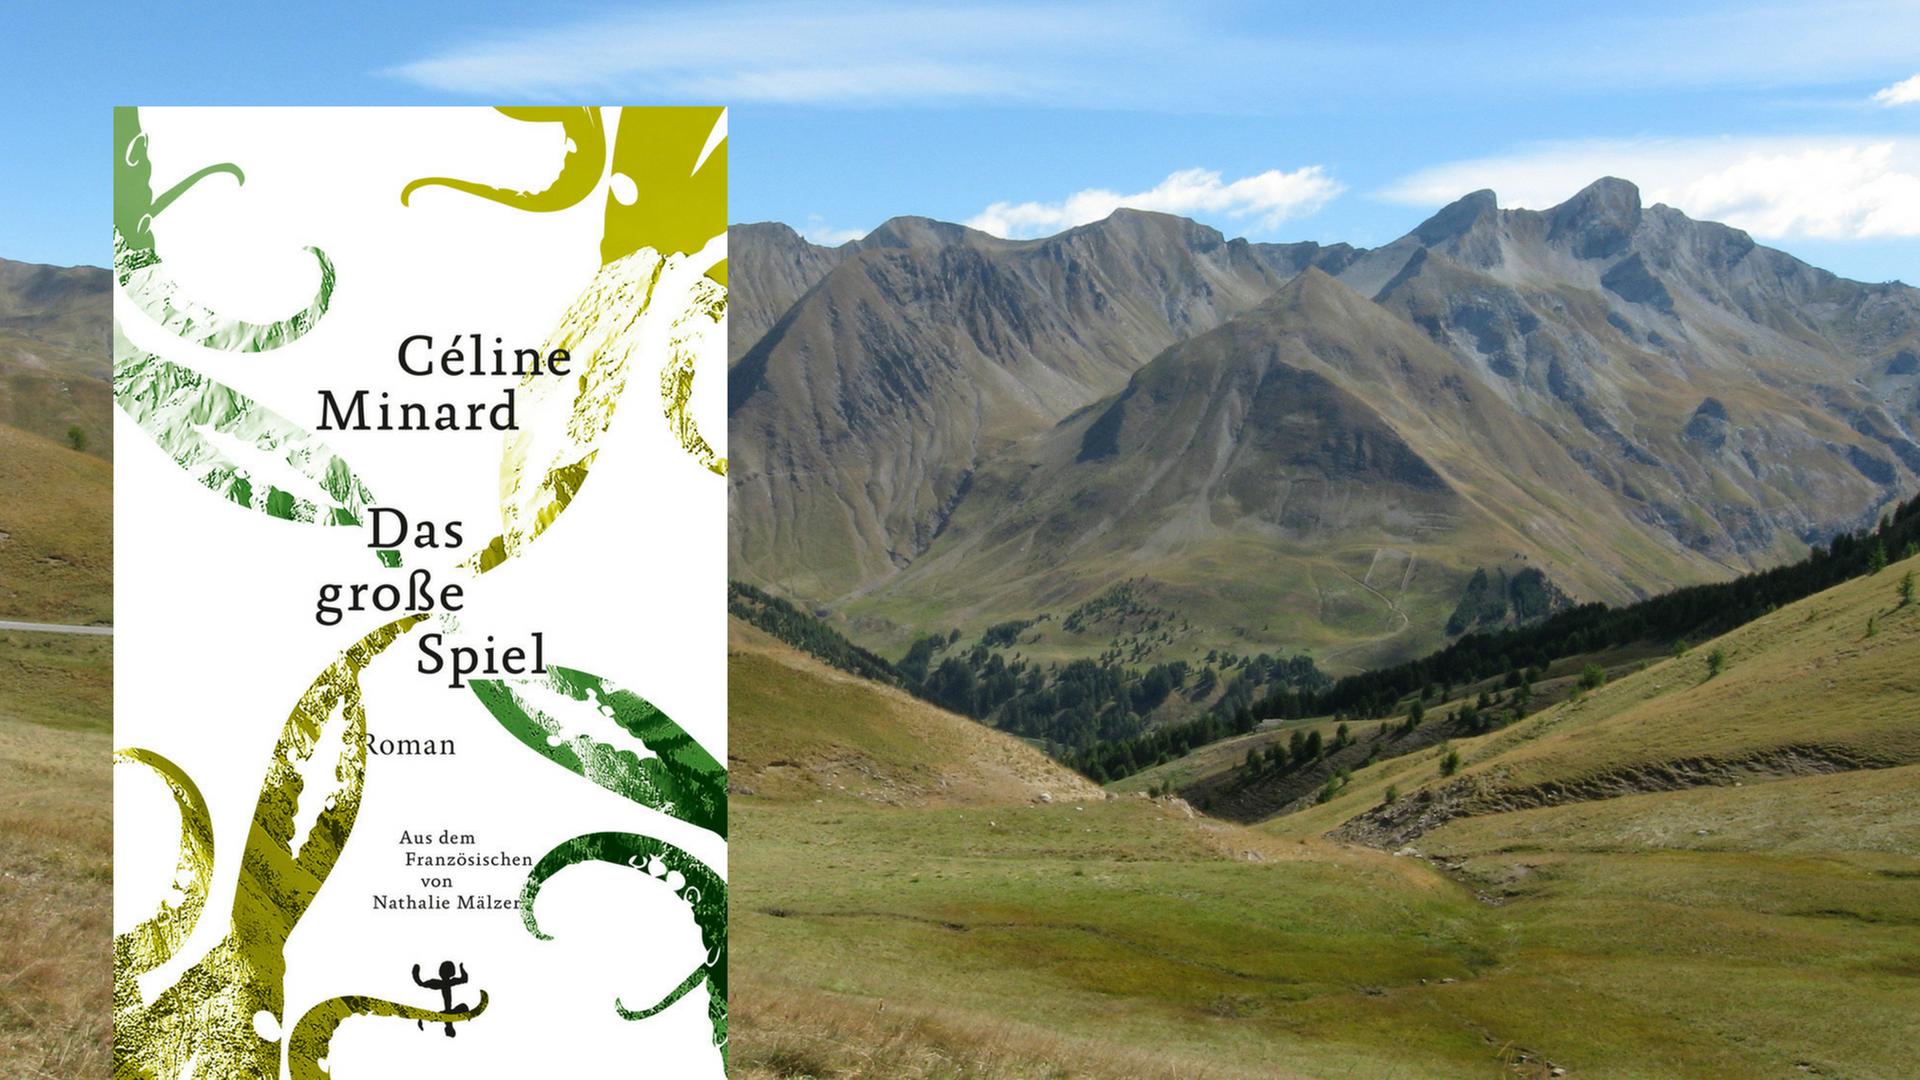 Buchcover: Céline Minard: "Das große Spiel" und karge Alpenlandschaft